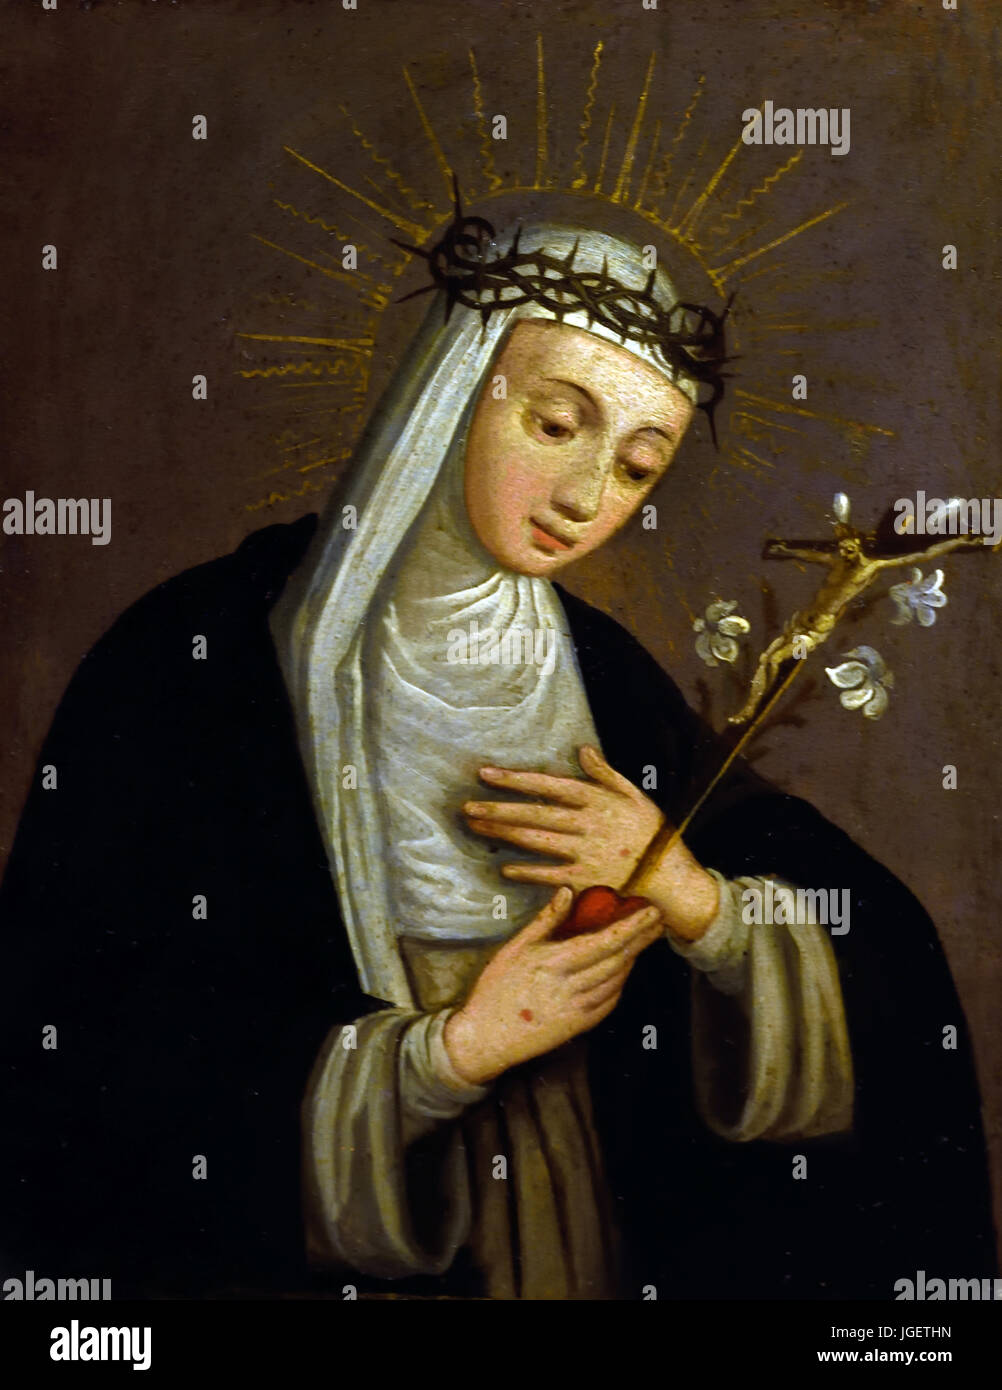 Sainte Catherine de Sienne - de Soeur Plautilla Nelli (1524-1588) était un autodidacte nun-artiste et la première femme peintre connus de Florence, Italie Banque D'Images